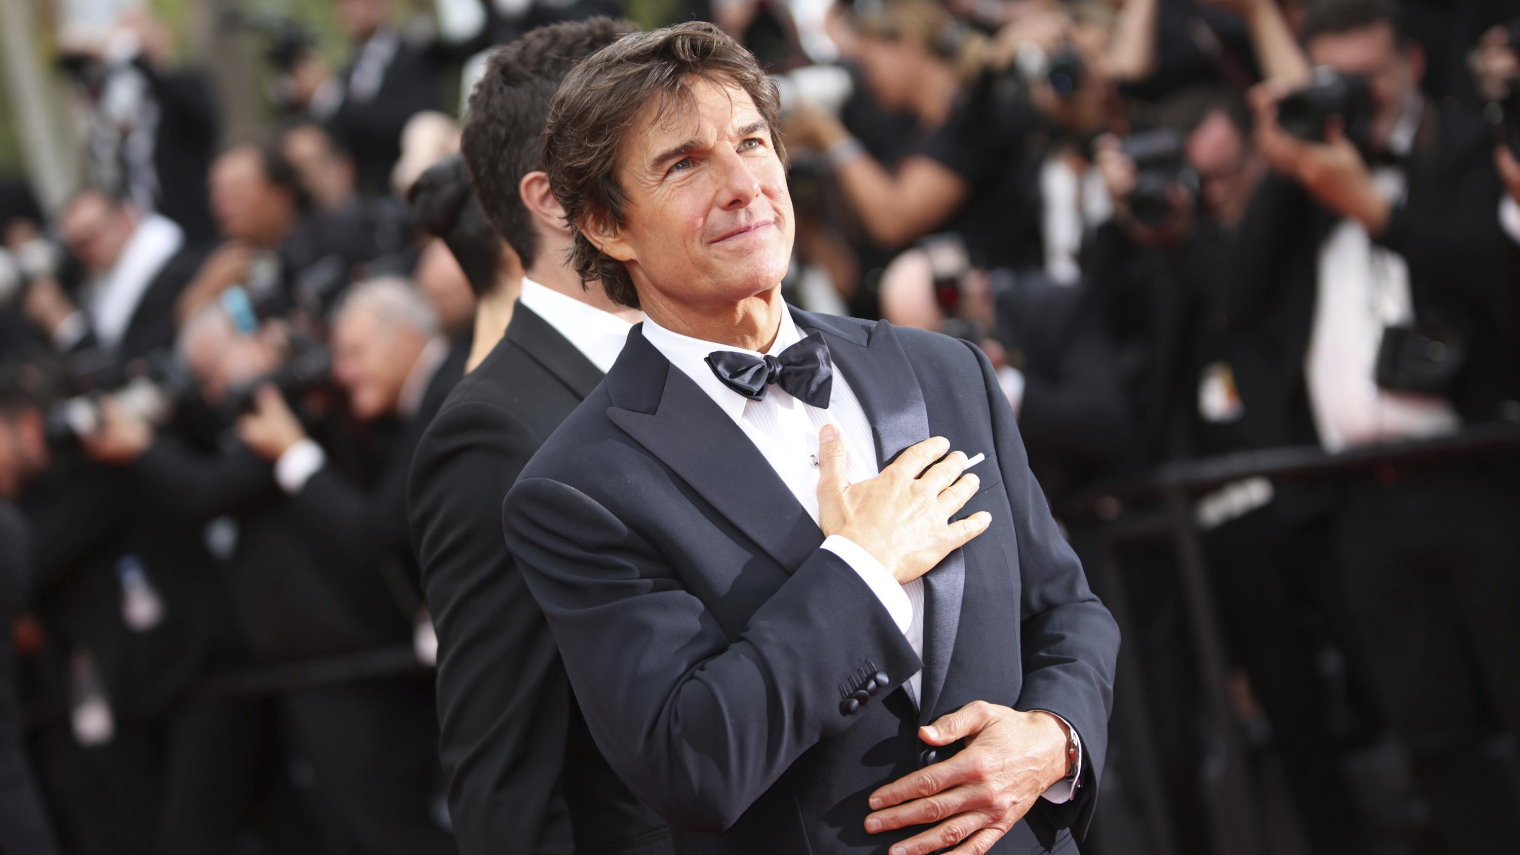 O ator de Hollywood Tom Cruise ainda tem o rosto inchado pelo que